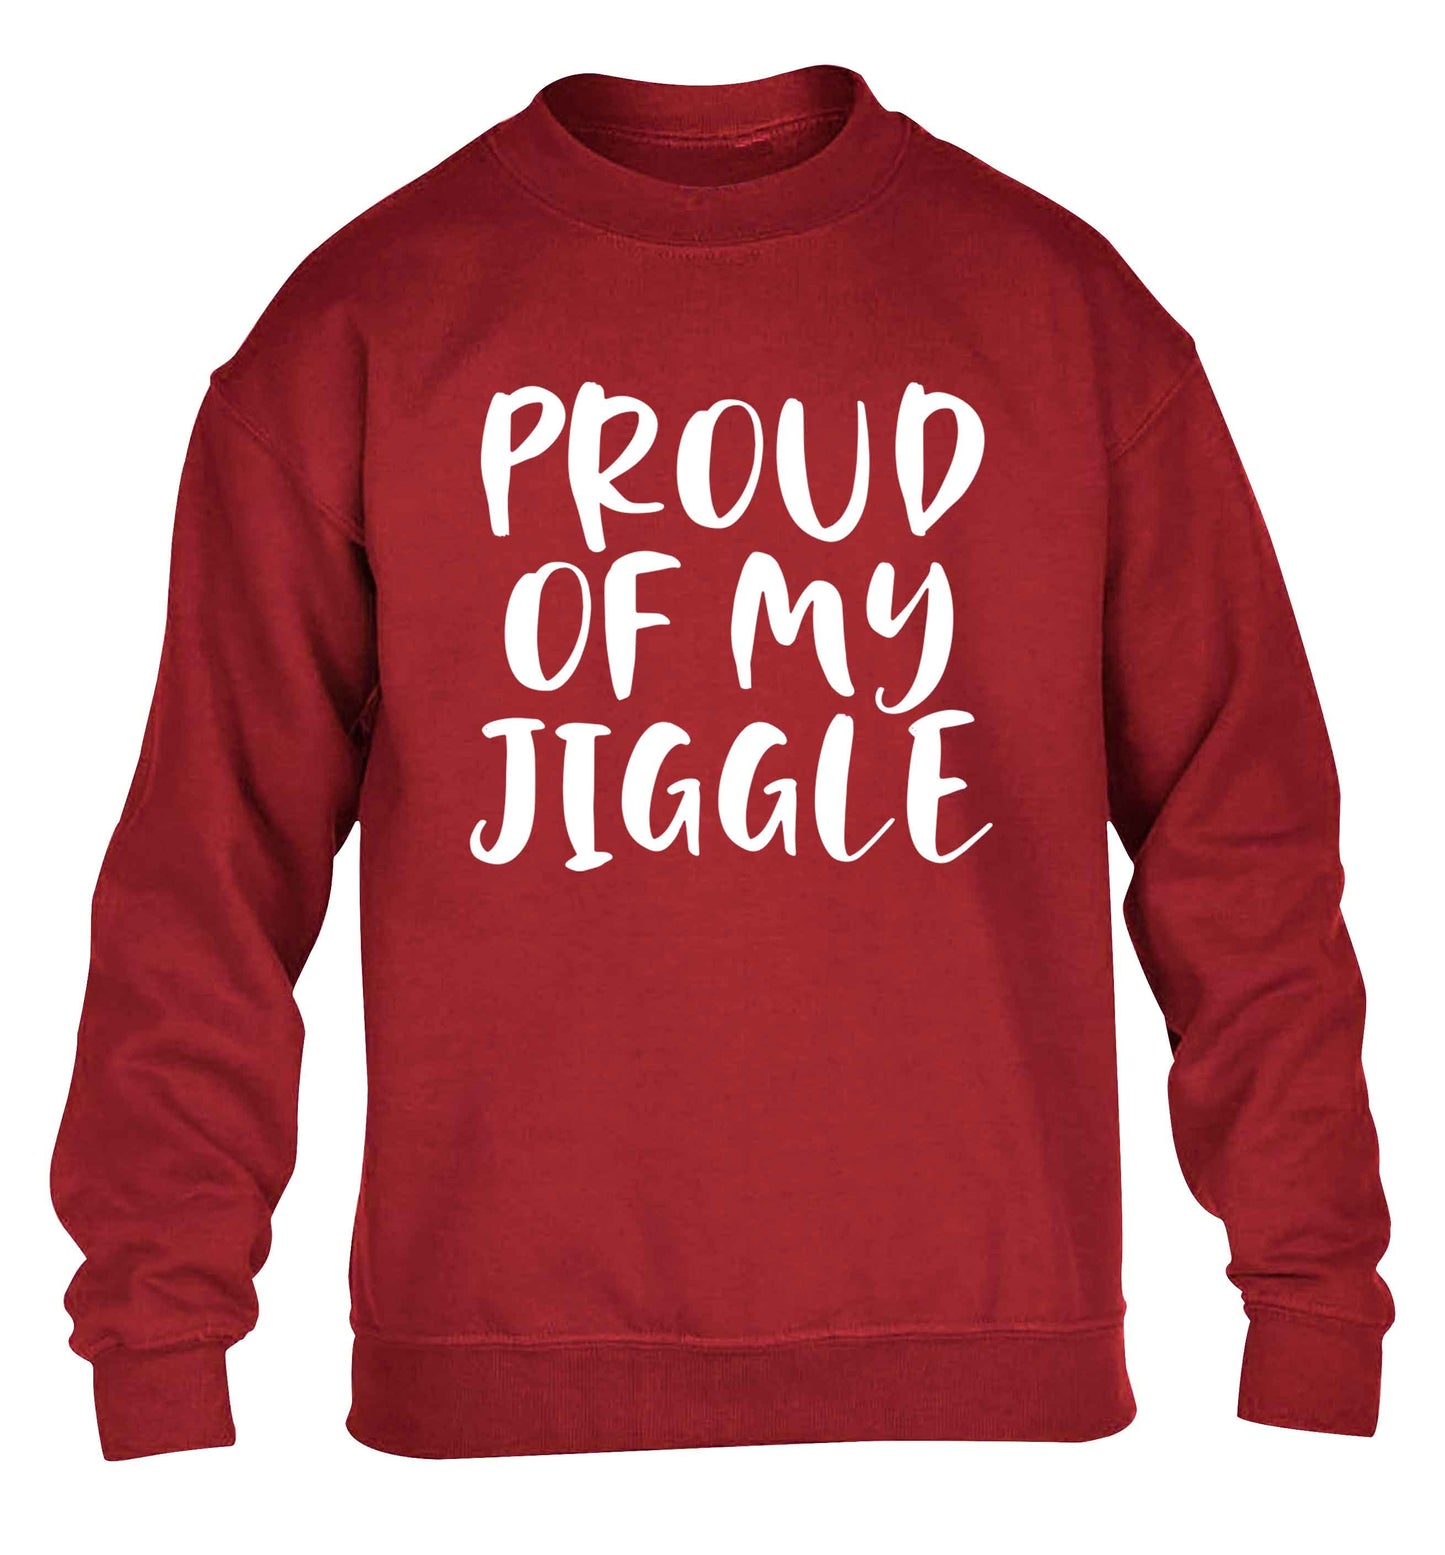 Proud of my jiggle children's grey sweater 12-13 Years